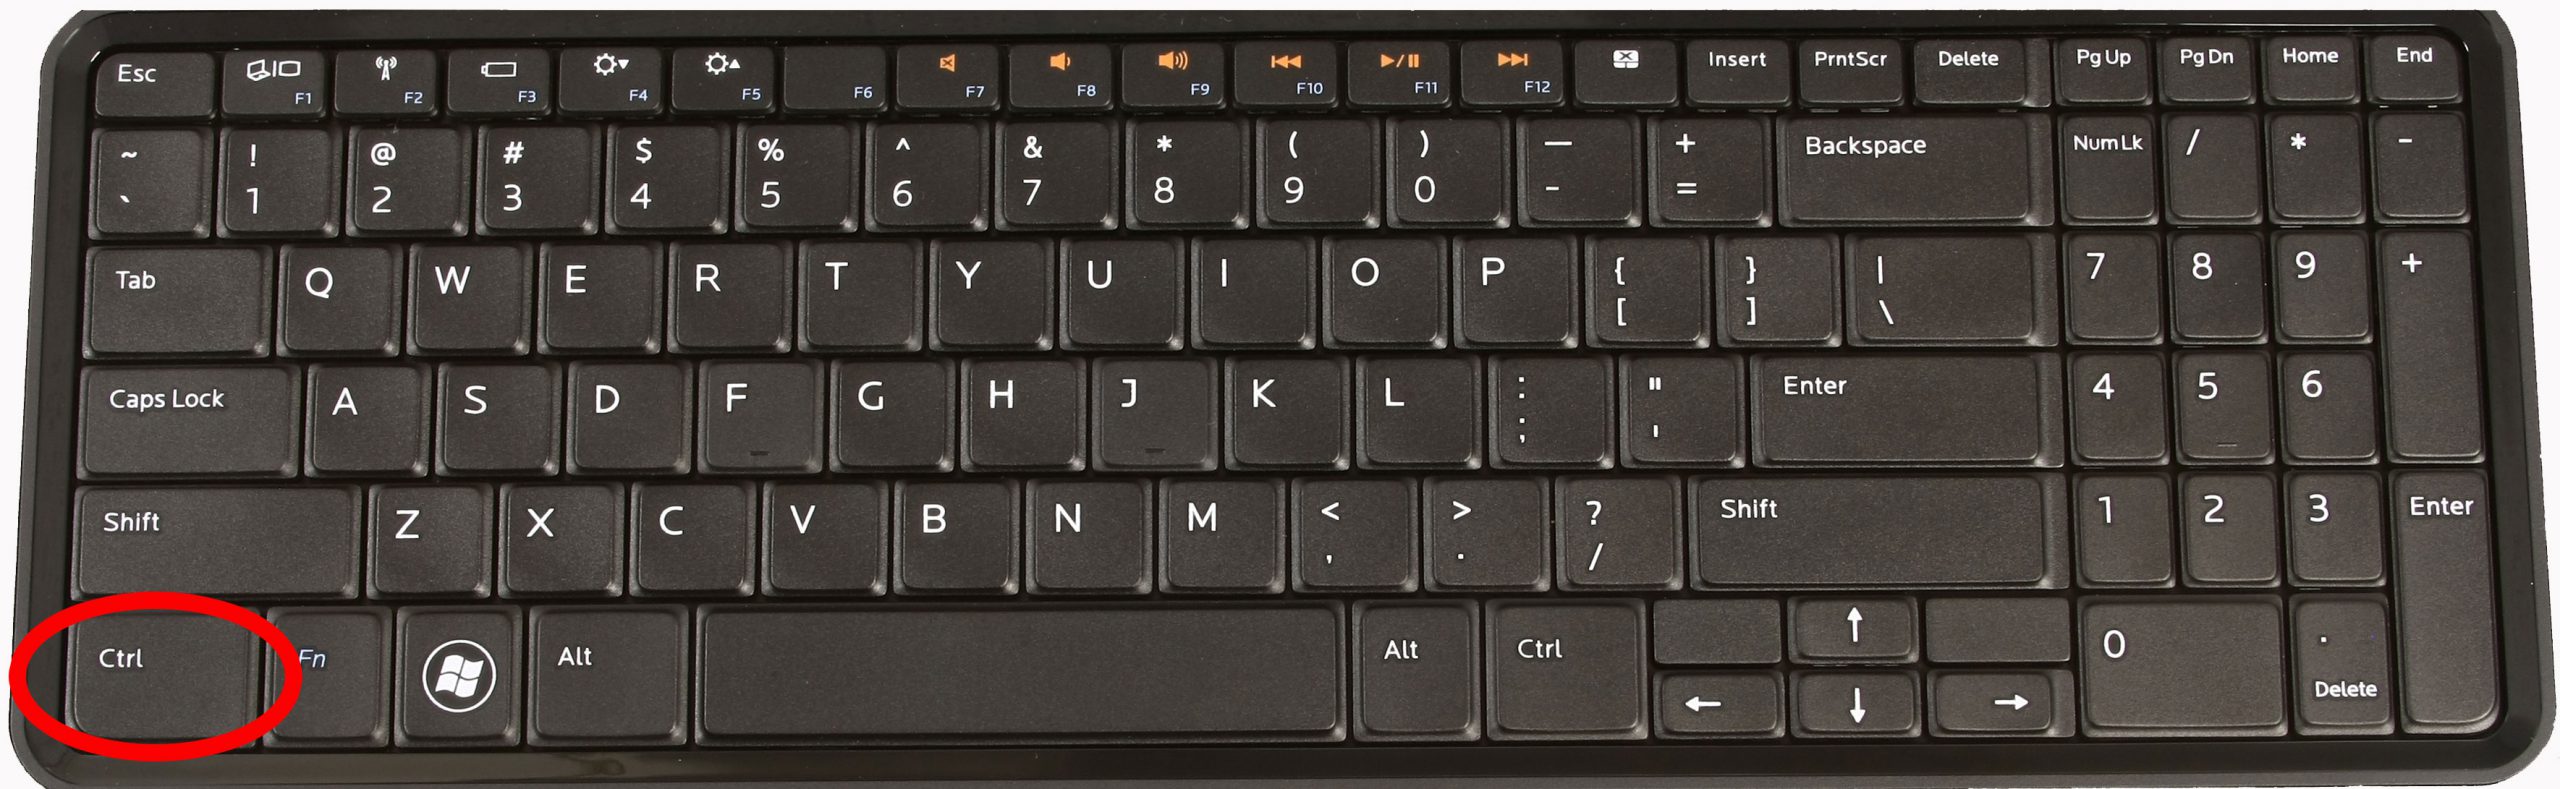 shift-on-a-pc-keyboard